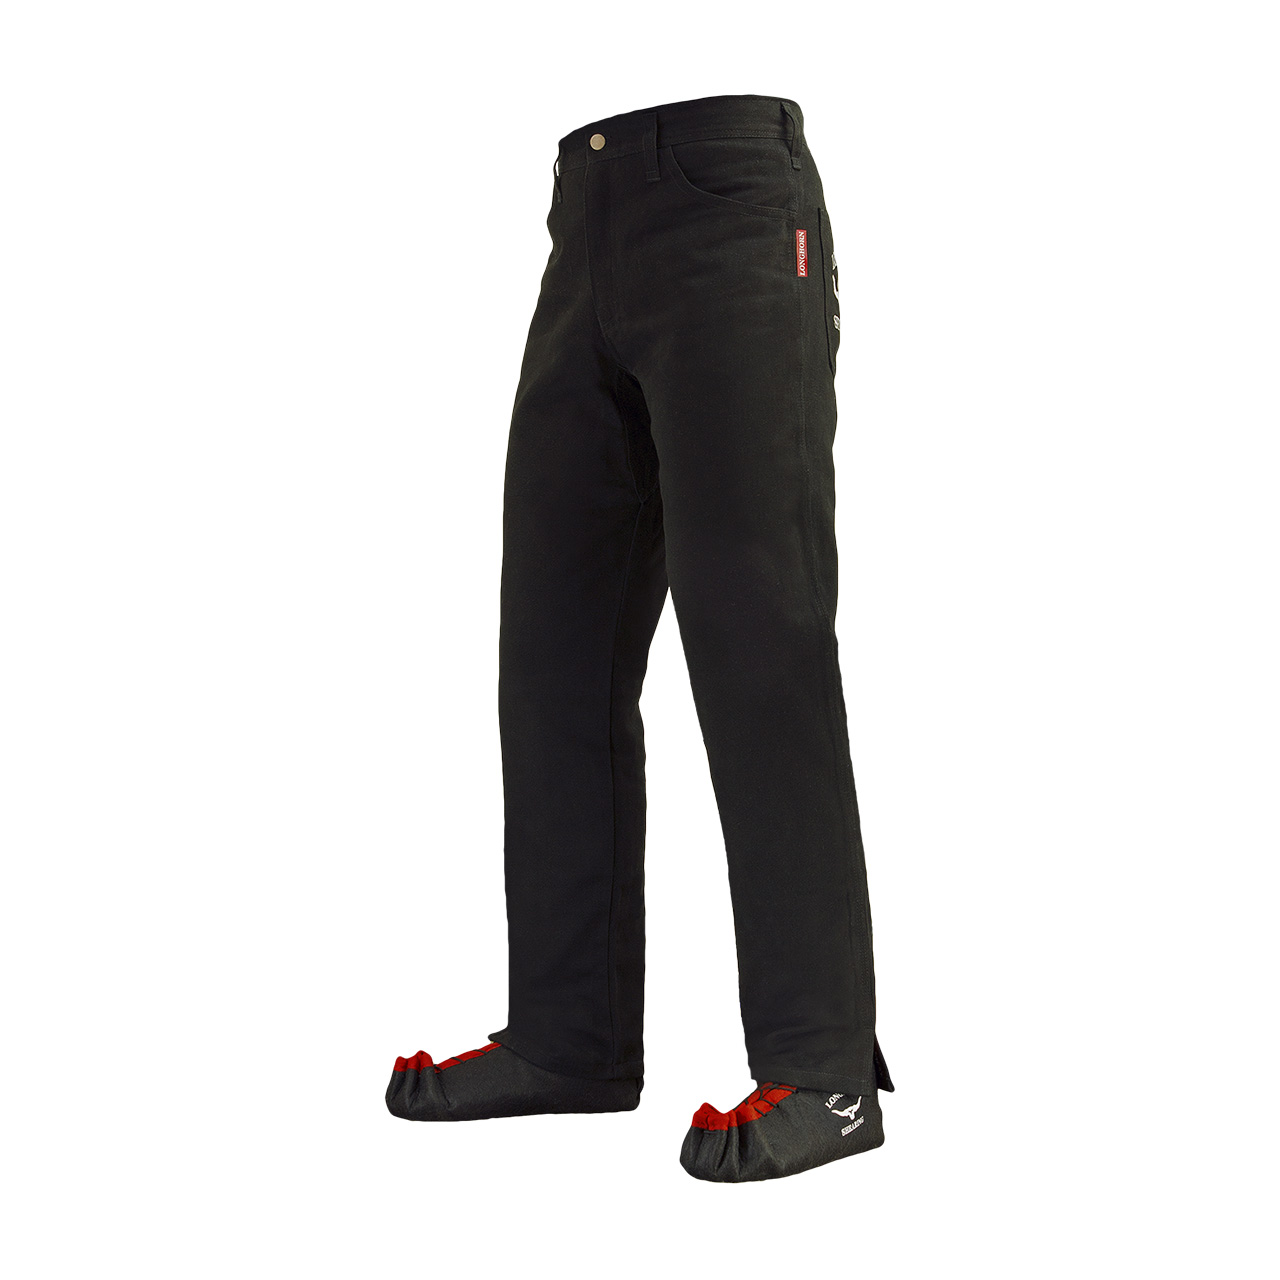 Longhorn™ kalhoty pro střihače ovcí s 2 předními kapsami velikost Slim 31/32 (4 1/2)